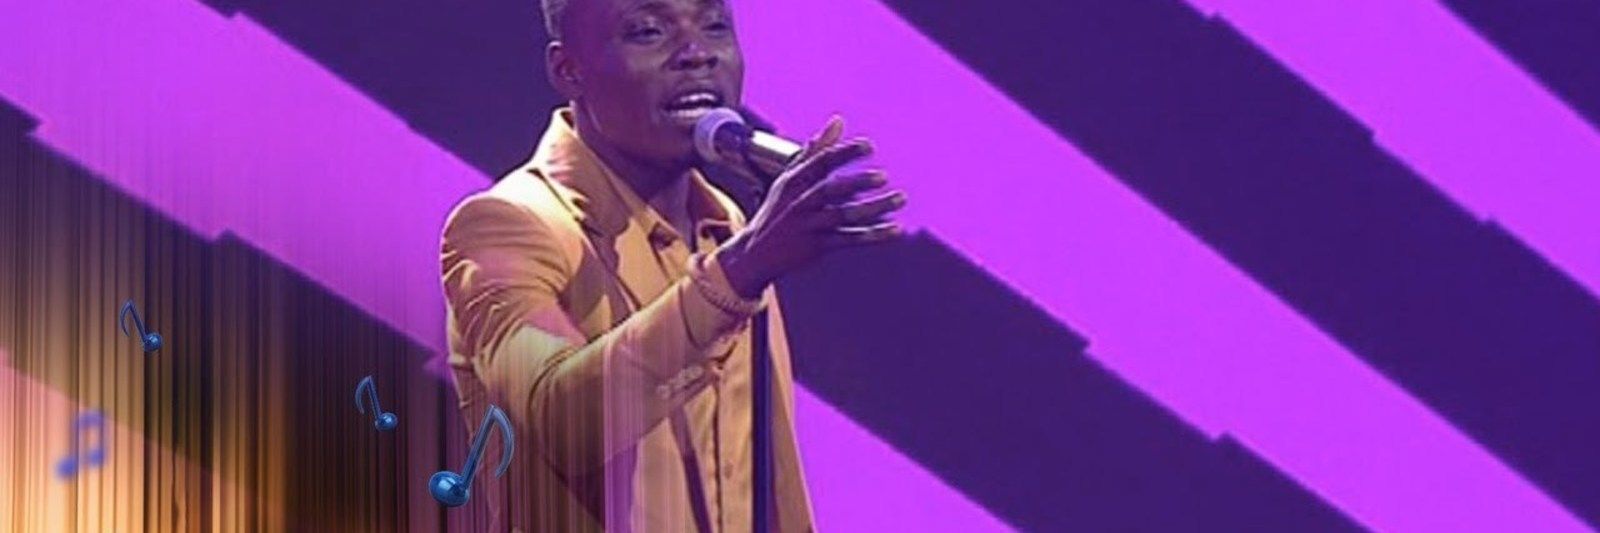 Nigerian Idol - Top 4 Reveal: Kingdom – ‘Holy Spirit’ – Nigerian Idol